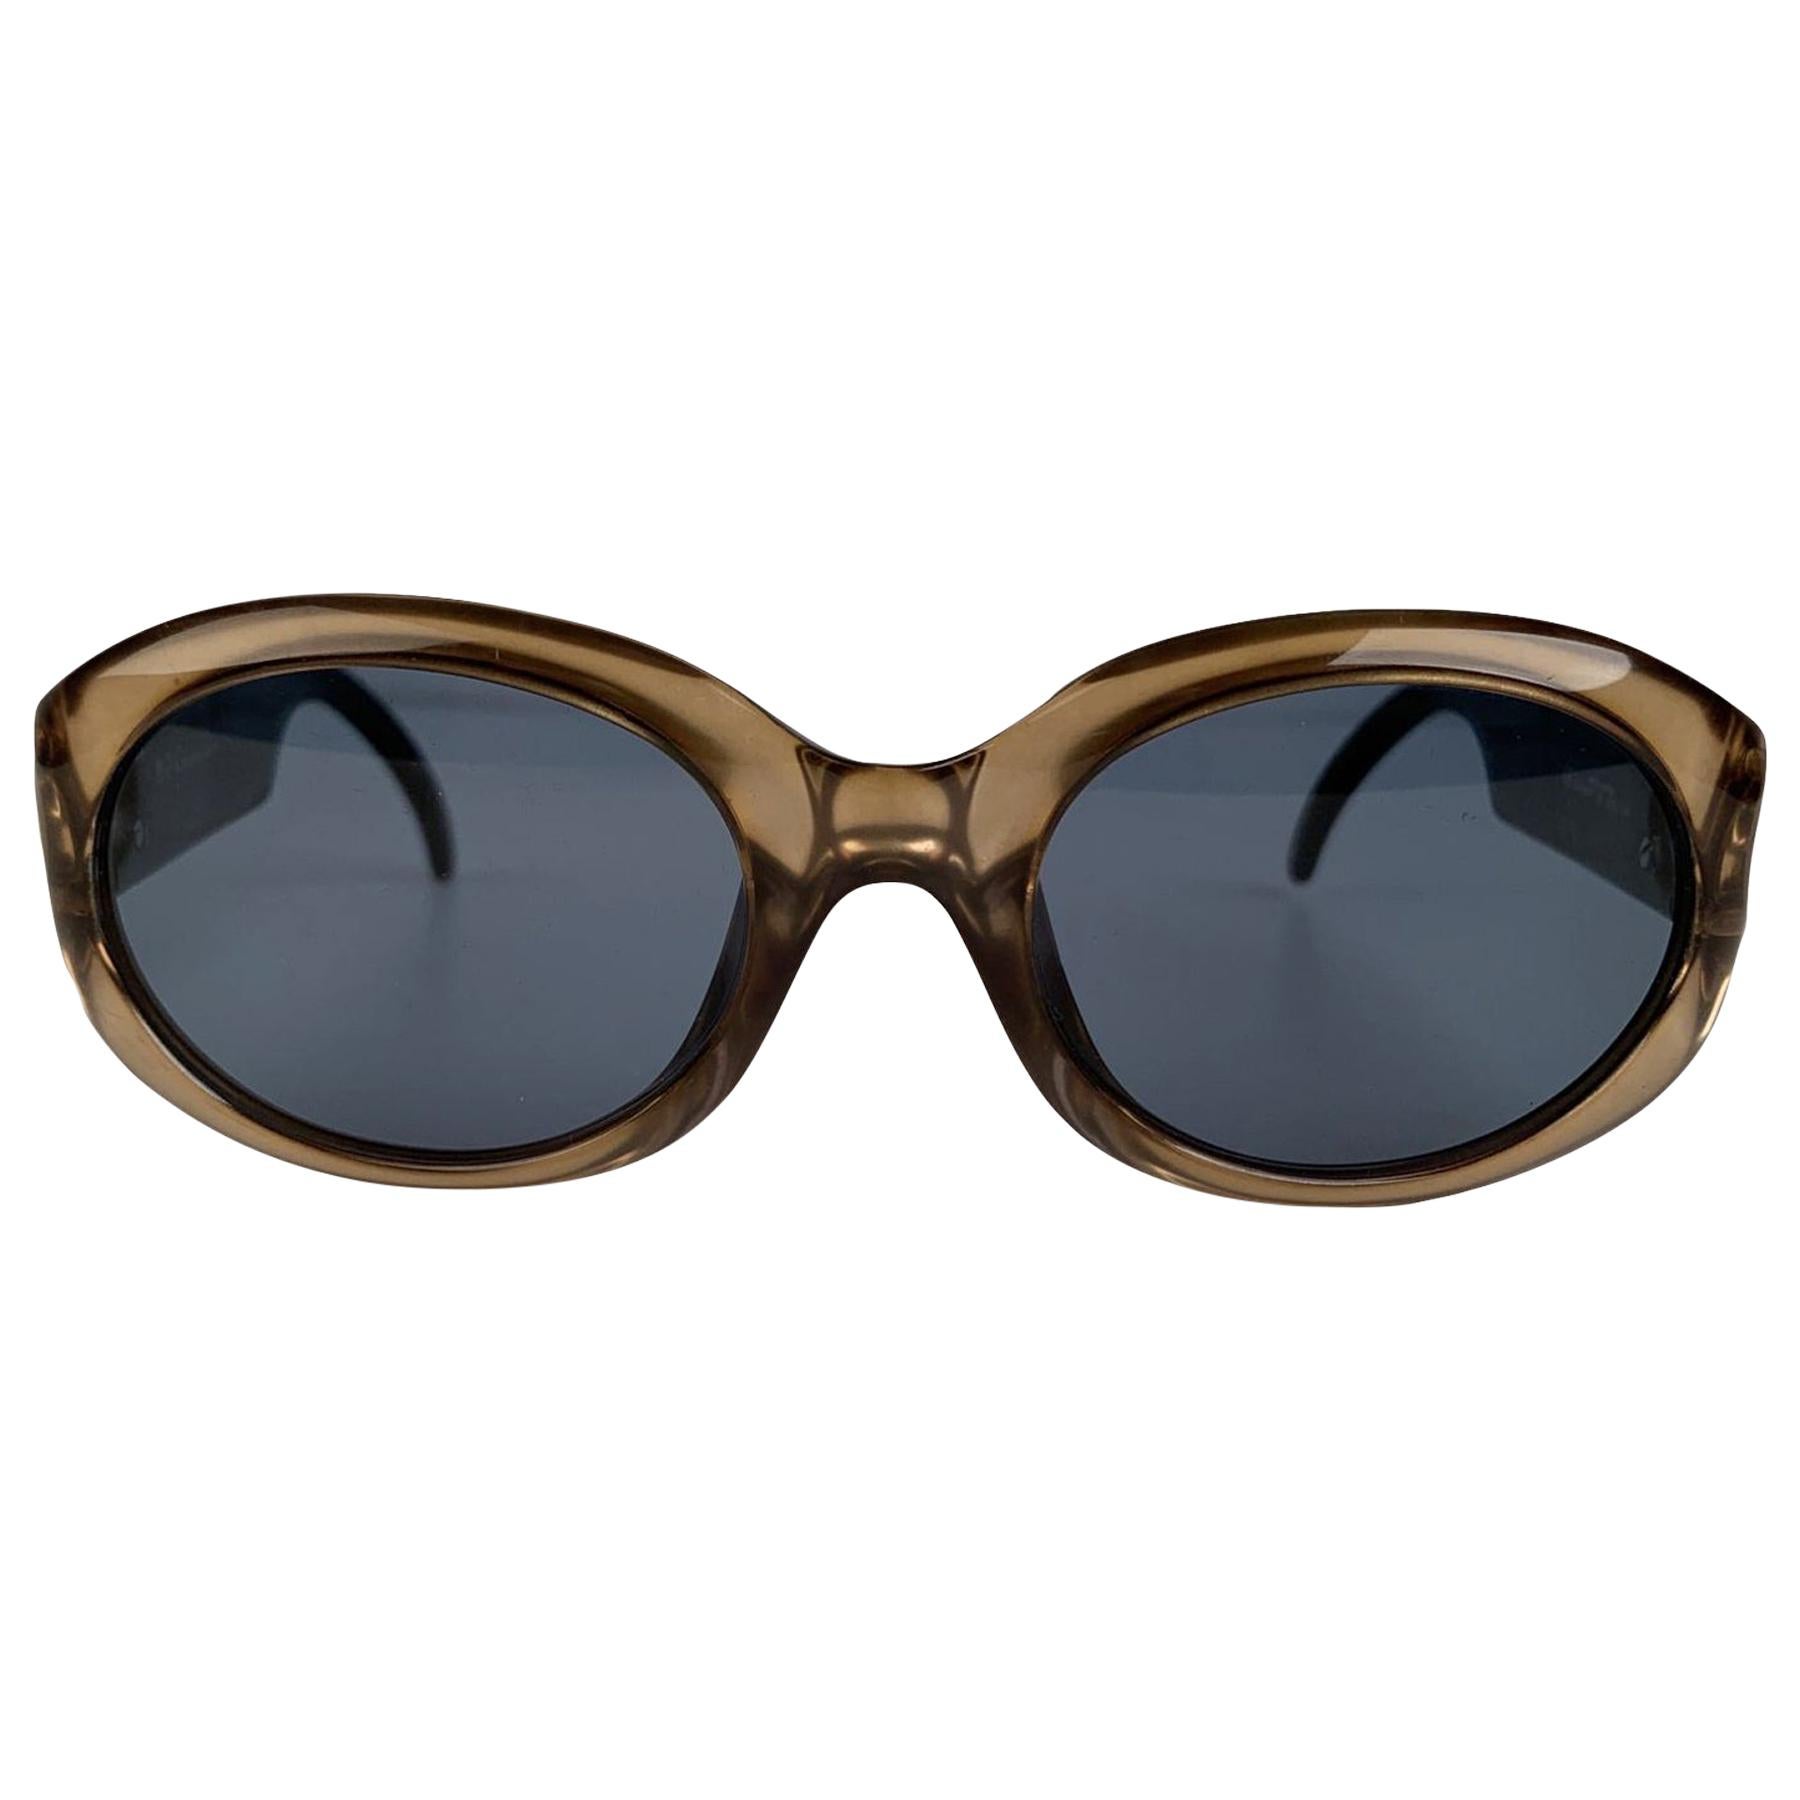 Christian Dior Gold Tone Acetate Mint Sunglasses DIORAMA 22H